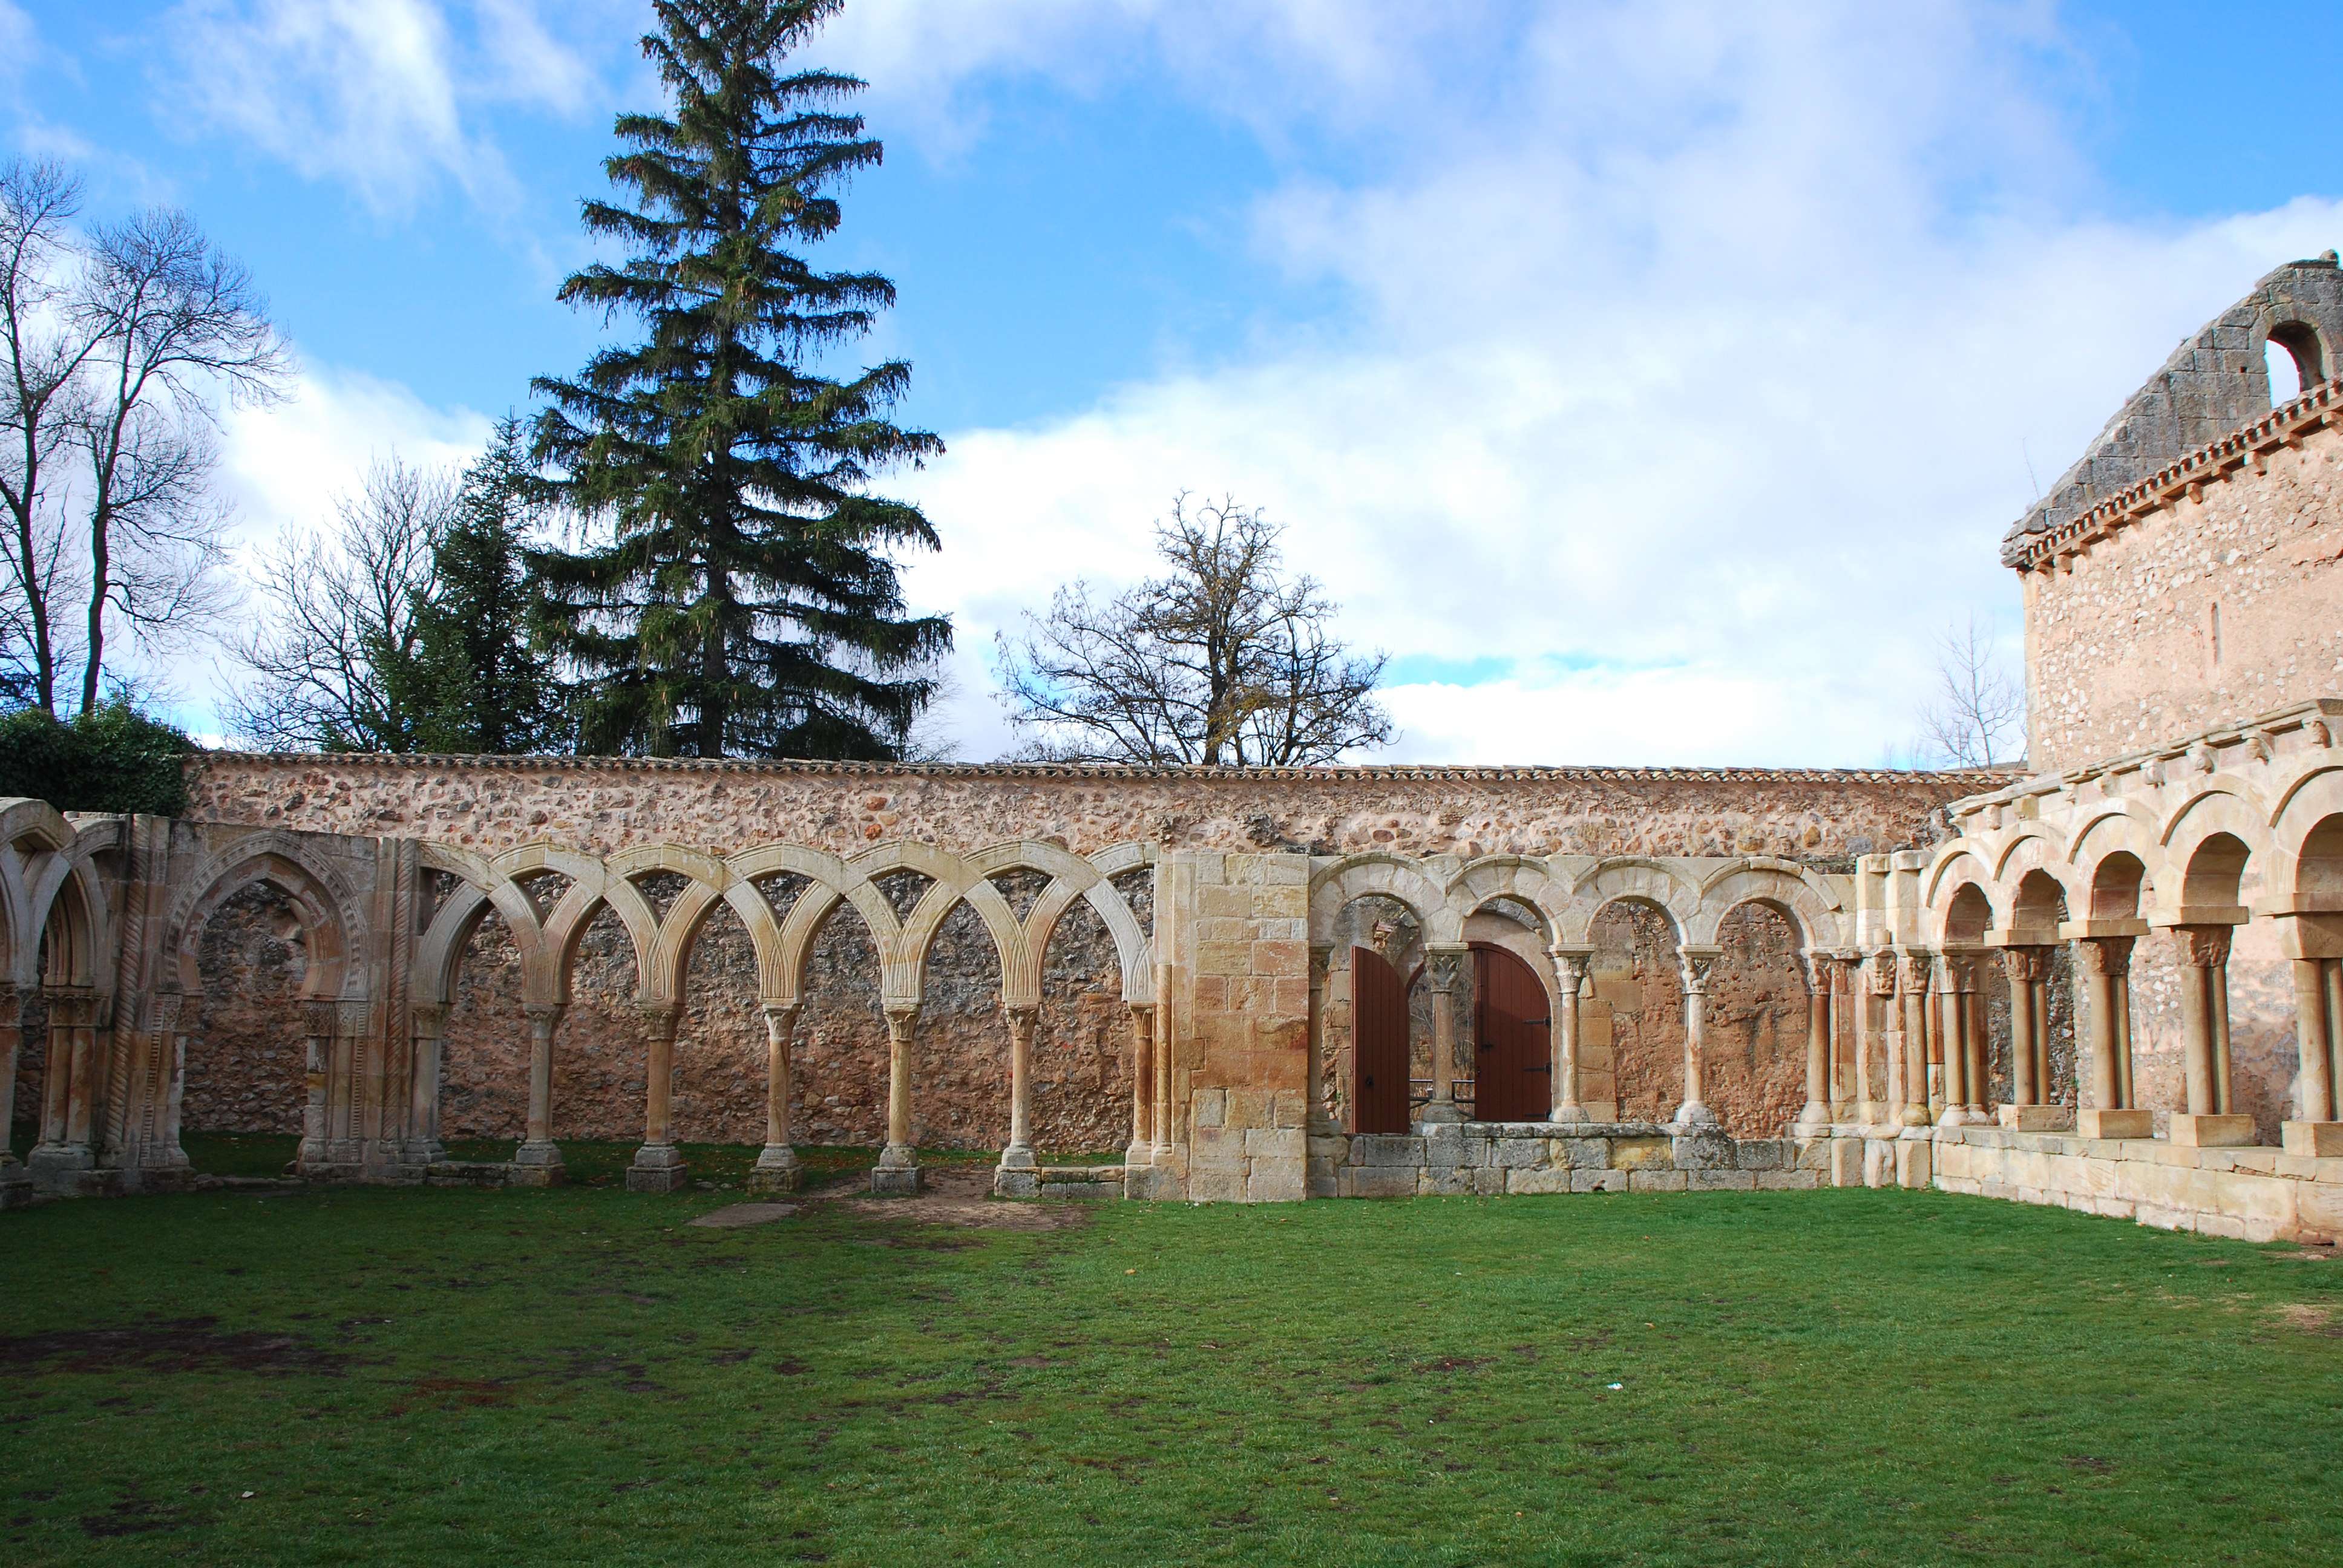 Monasterio de San Juan de Duero. Un enigma - Blogs de España - Monasterio de San Juan de Duero (12)